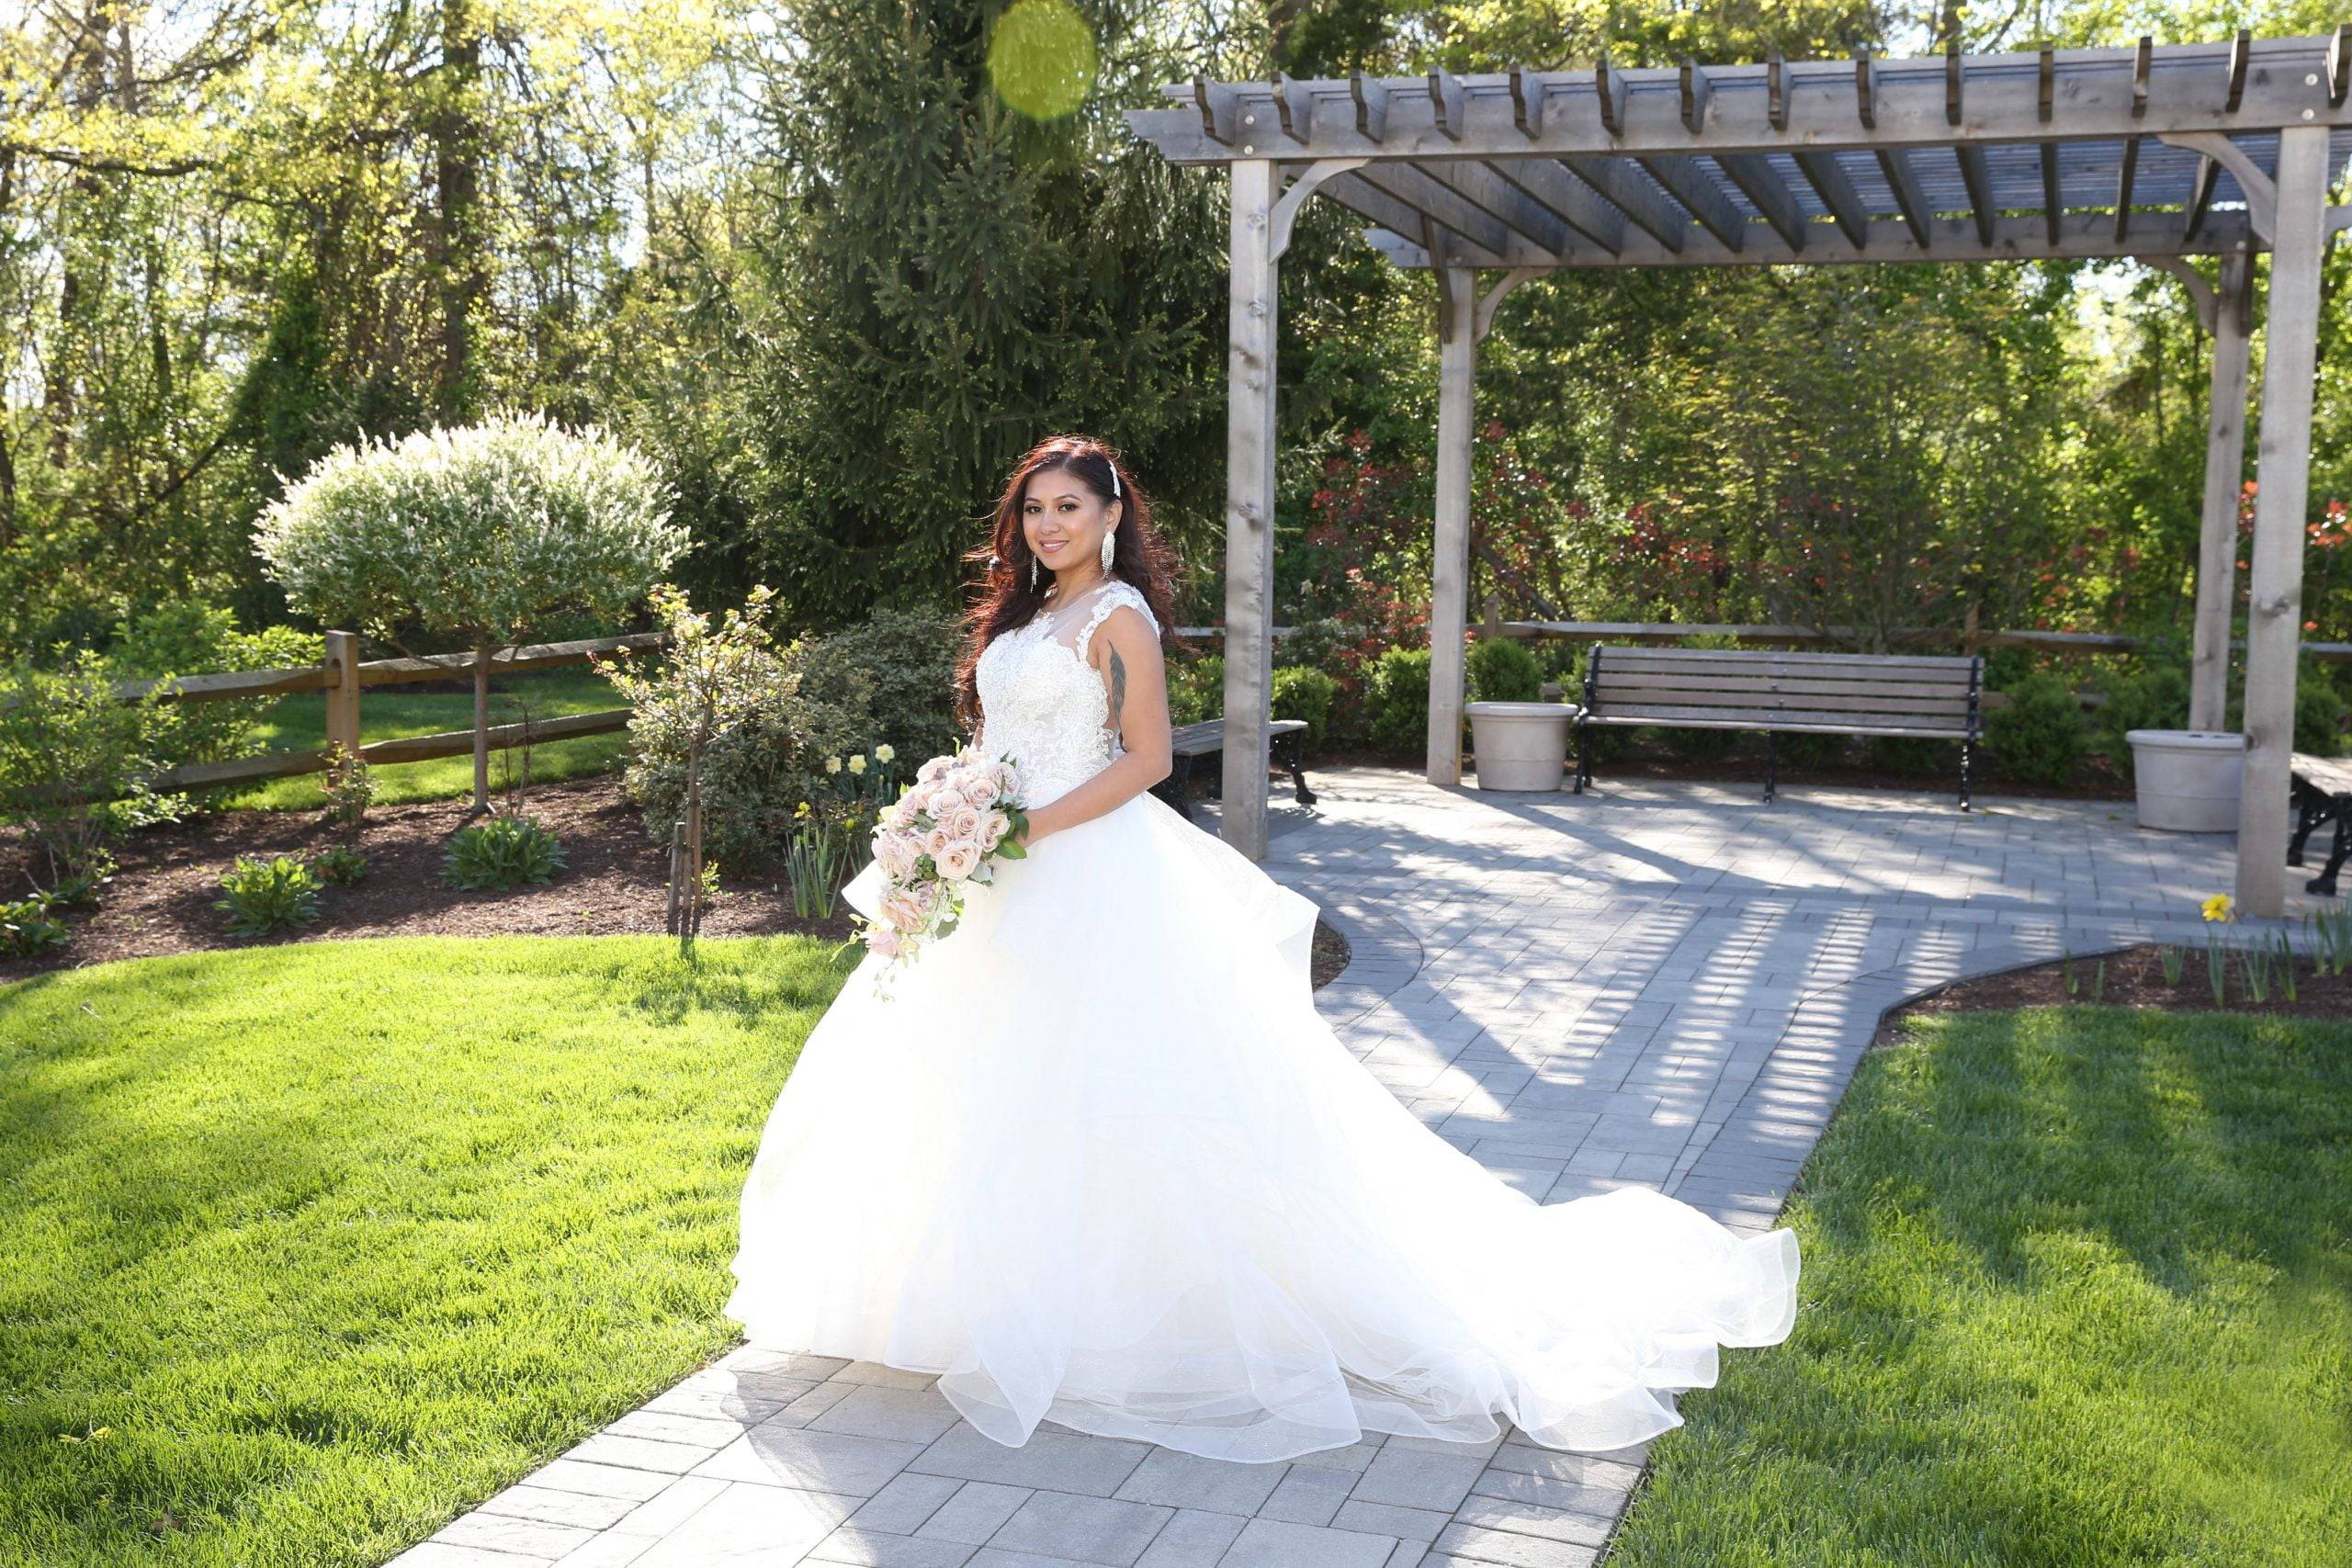 A bride is posing in front of a gazebo in a garden.